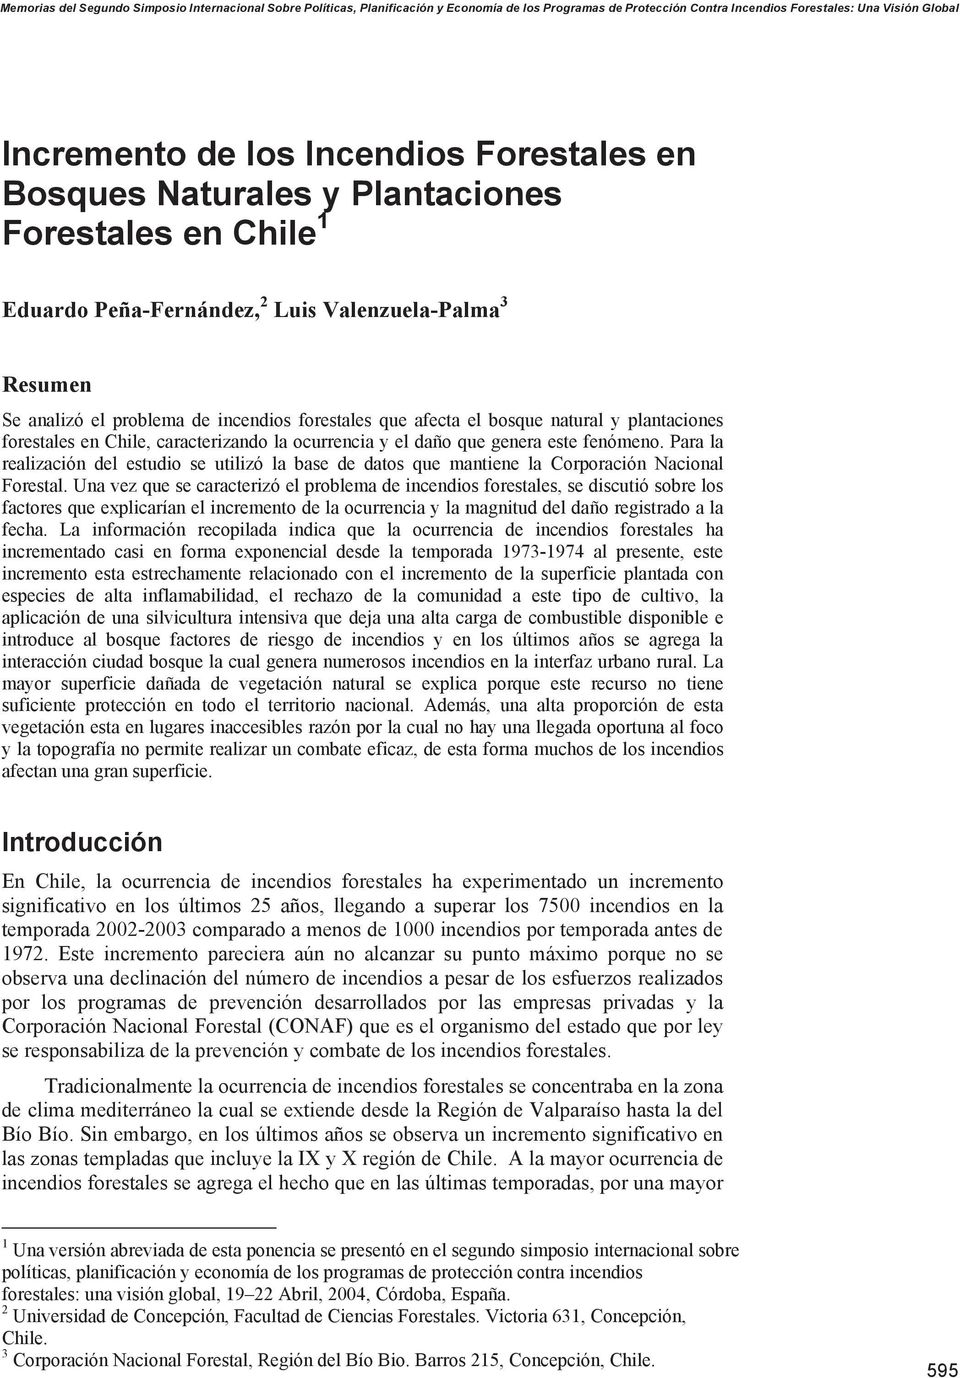 natural y plantaciones forestales en Chile, caracterizando la ocurrencia y el daño que genera este fenómeno.